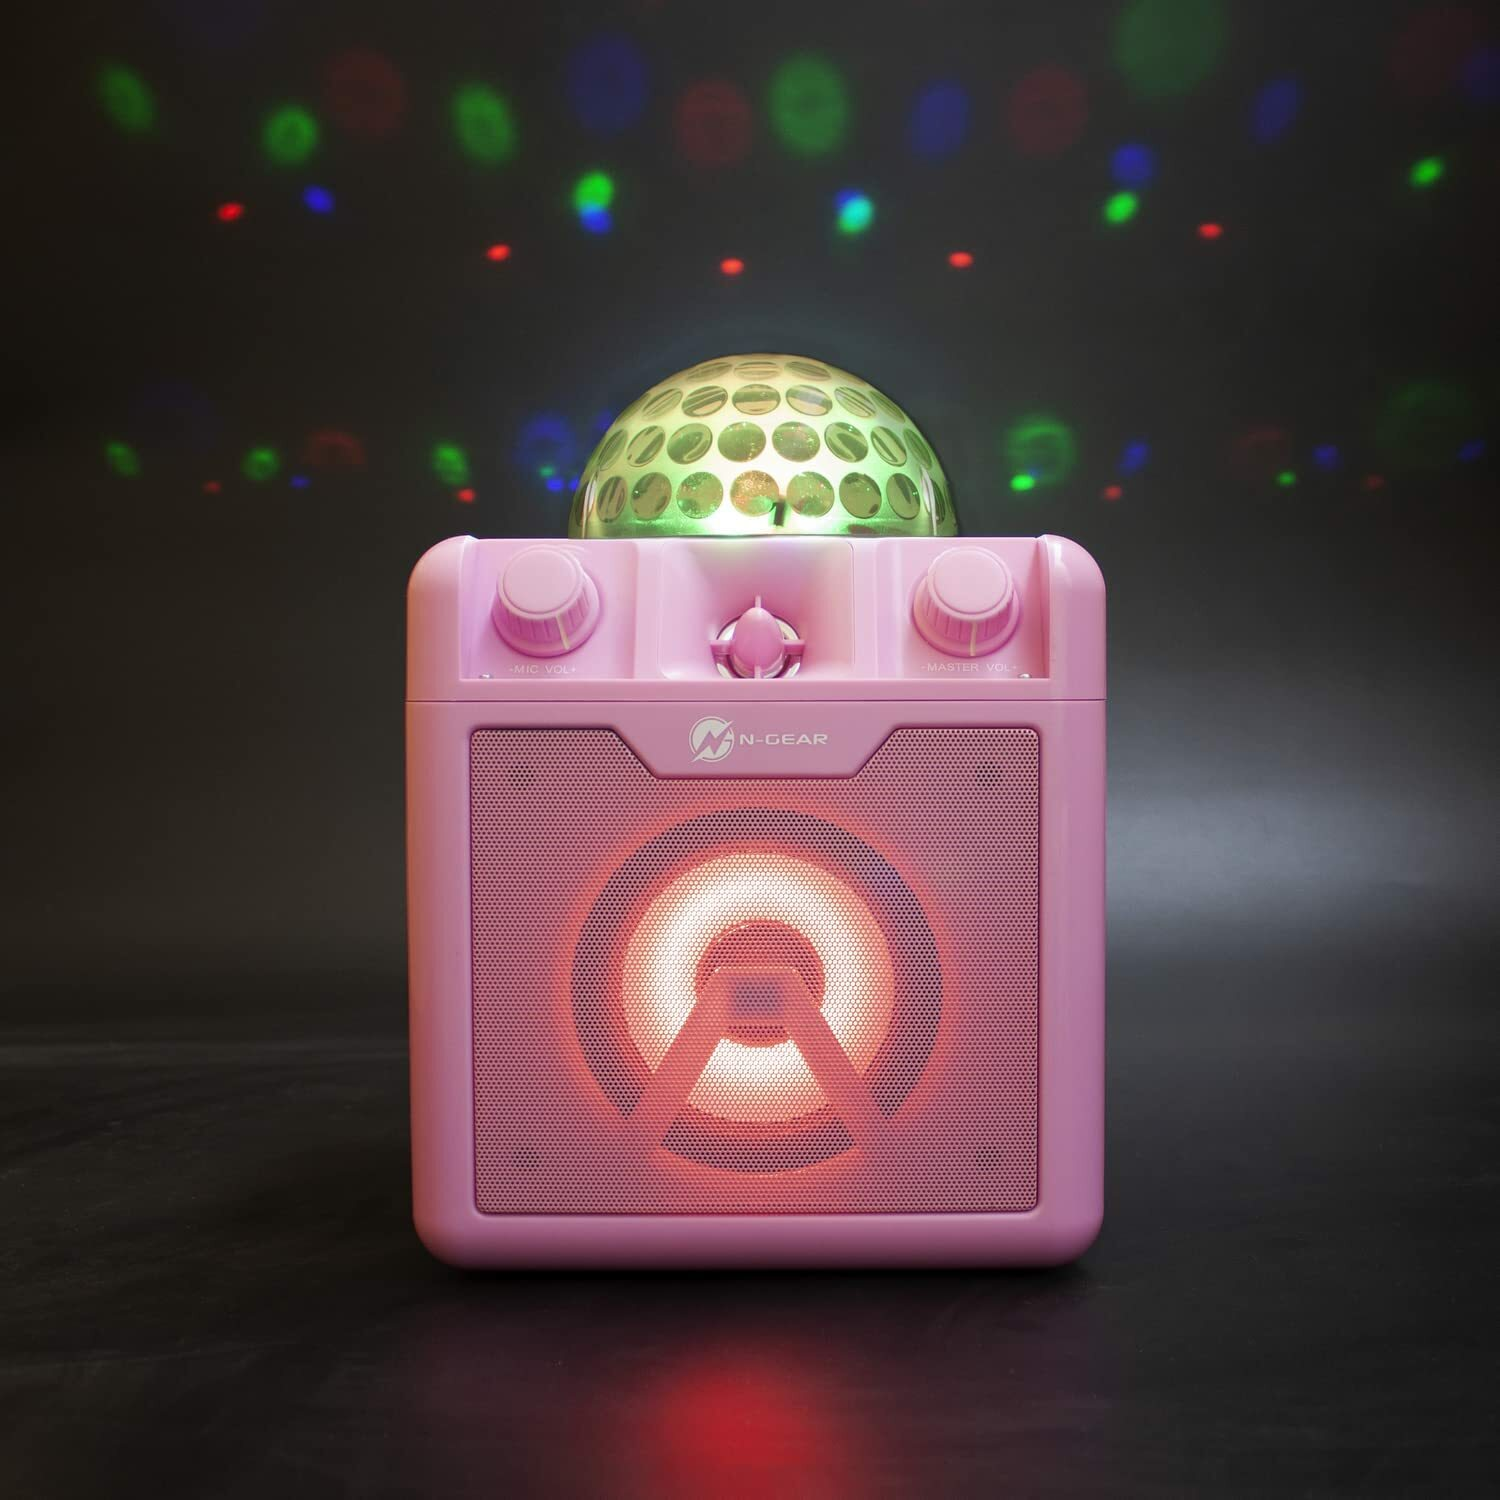 N-GEAR DISCO410-PK Karaoke-Lautsprecher, pink